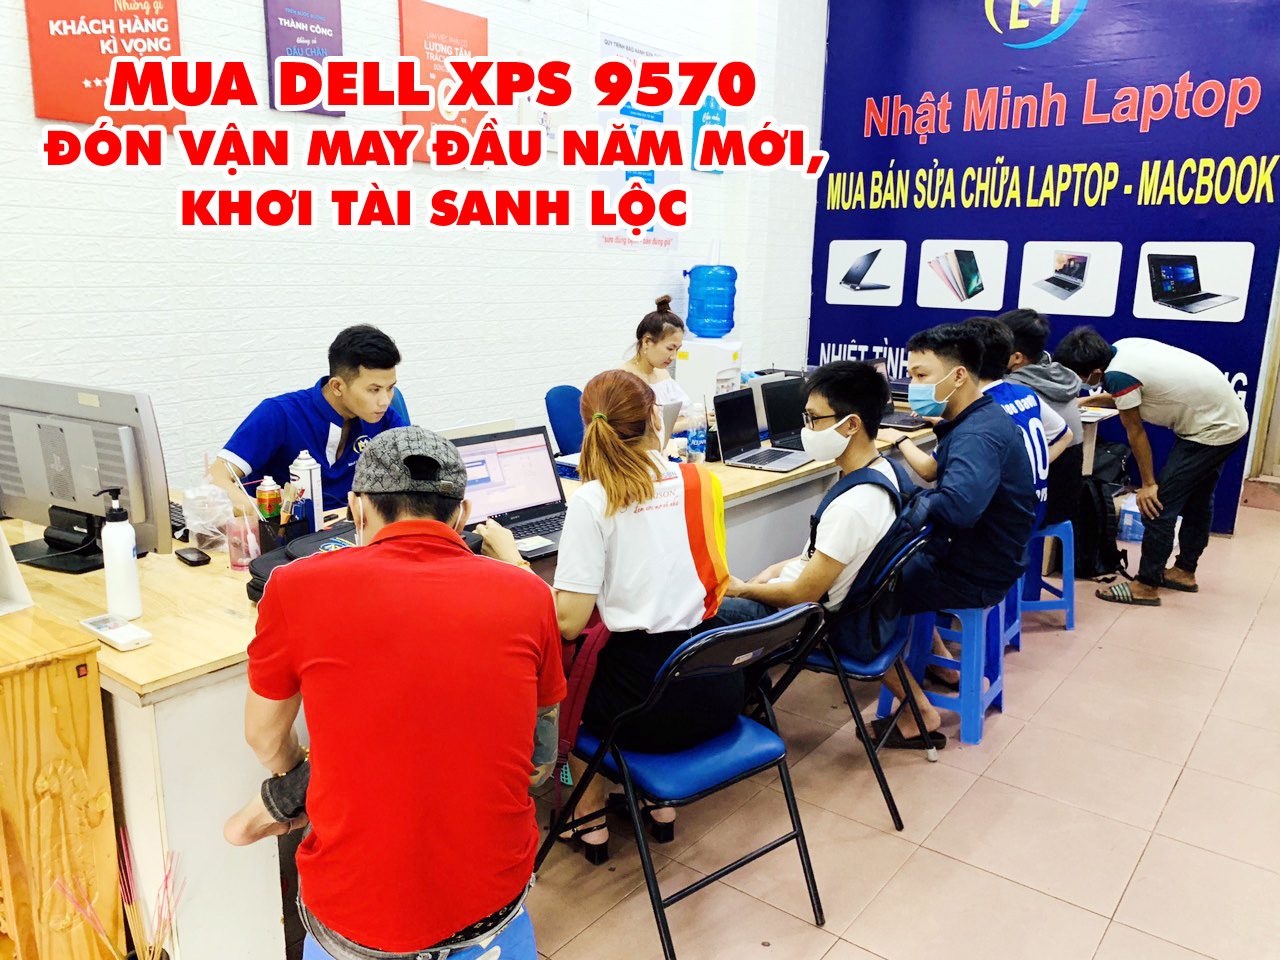 Lam giàu từ Dell XPS 9570